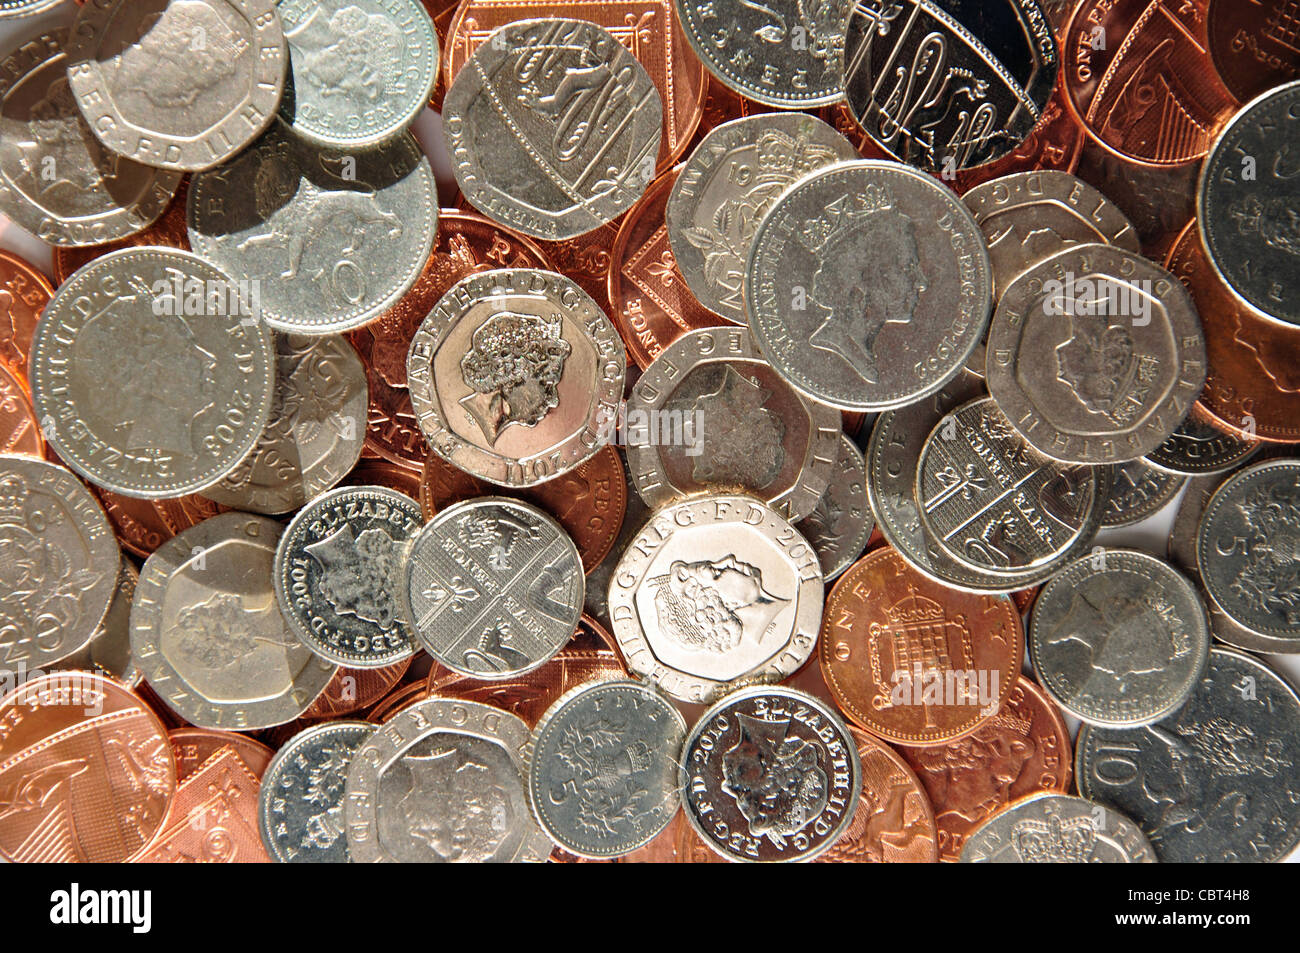 Collection de pièces de monnaie britanniques, Greater London, Angleterre, Royaume-Uni Banque D'Images